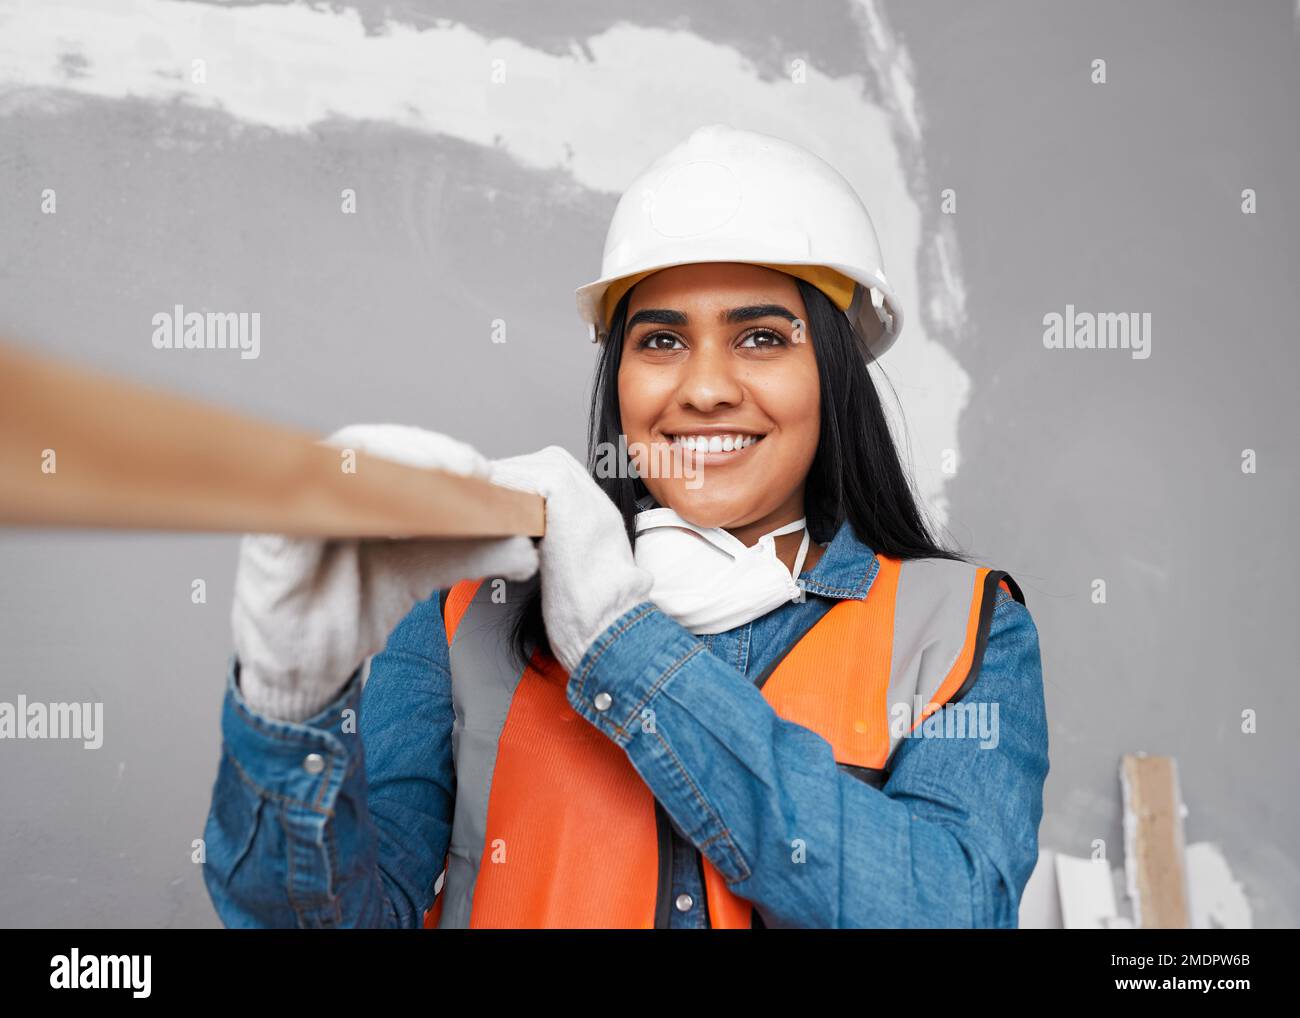 Una atractiva mujer del sur de Asia lleva tablón de madera con traje de construcción Foto de stock